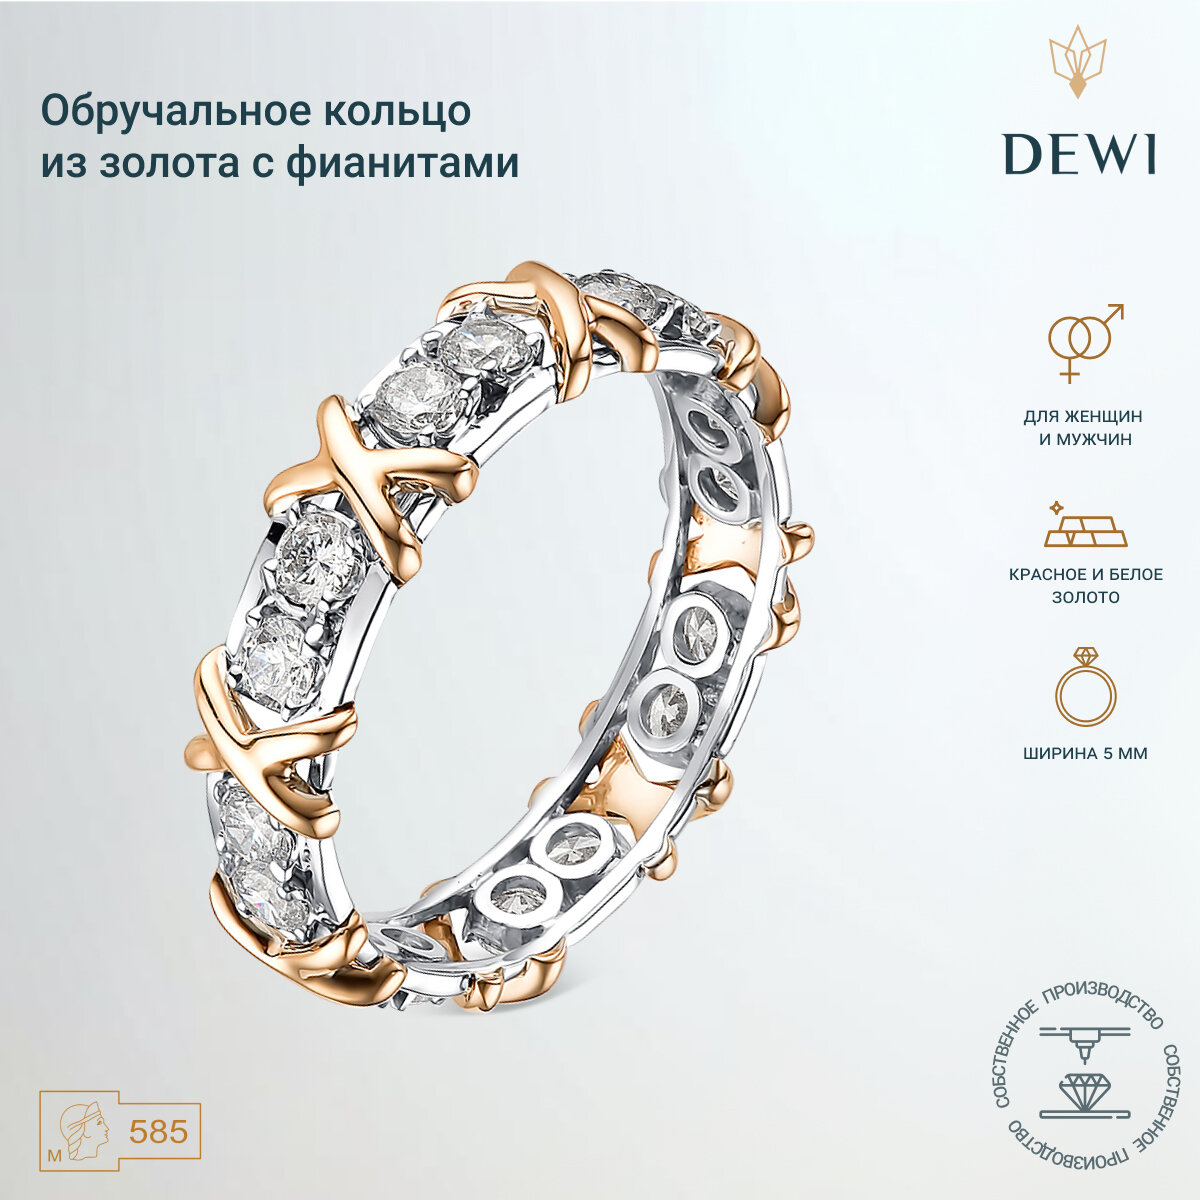 Кольцо обручальное Dewi, белое золото, 585 проба, фианит